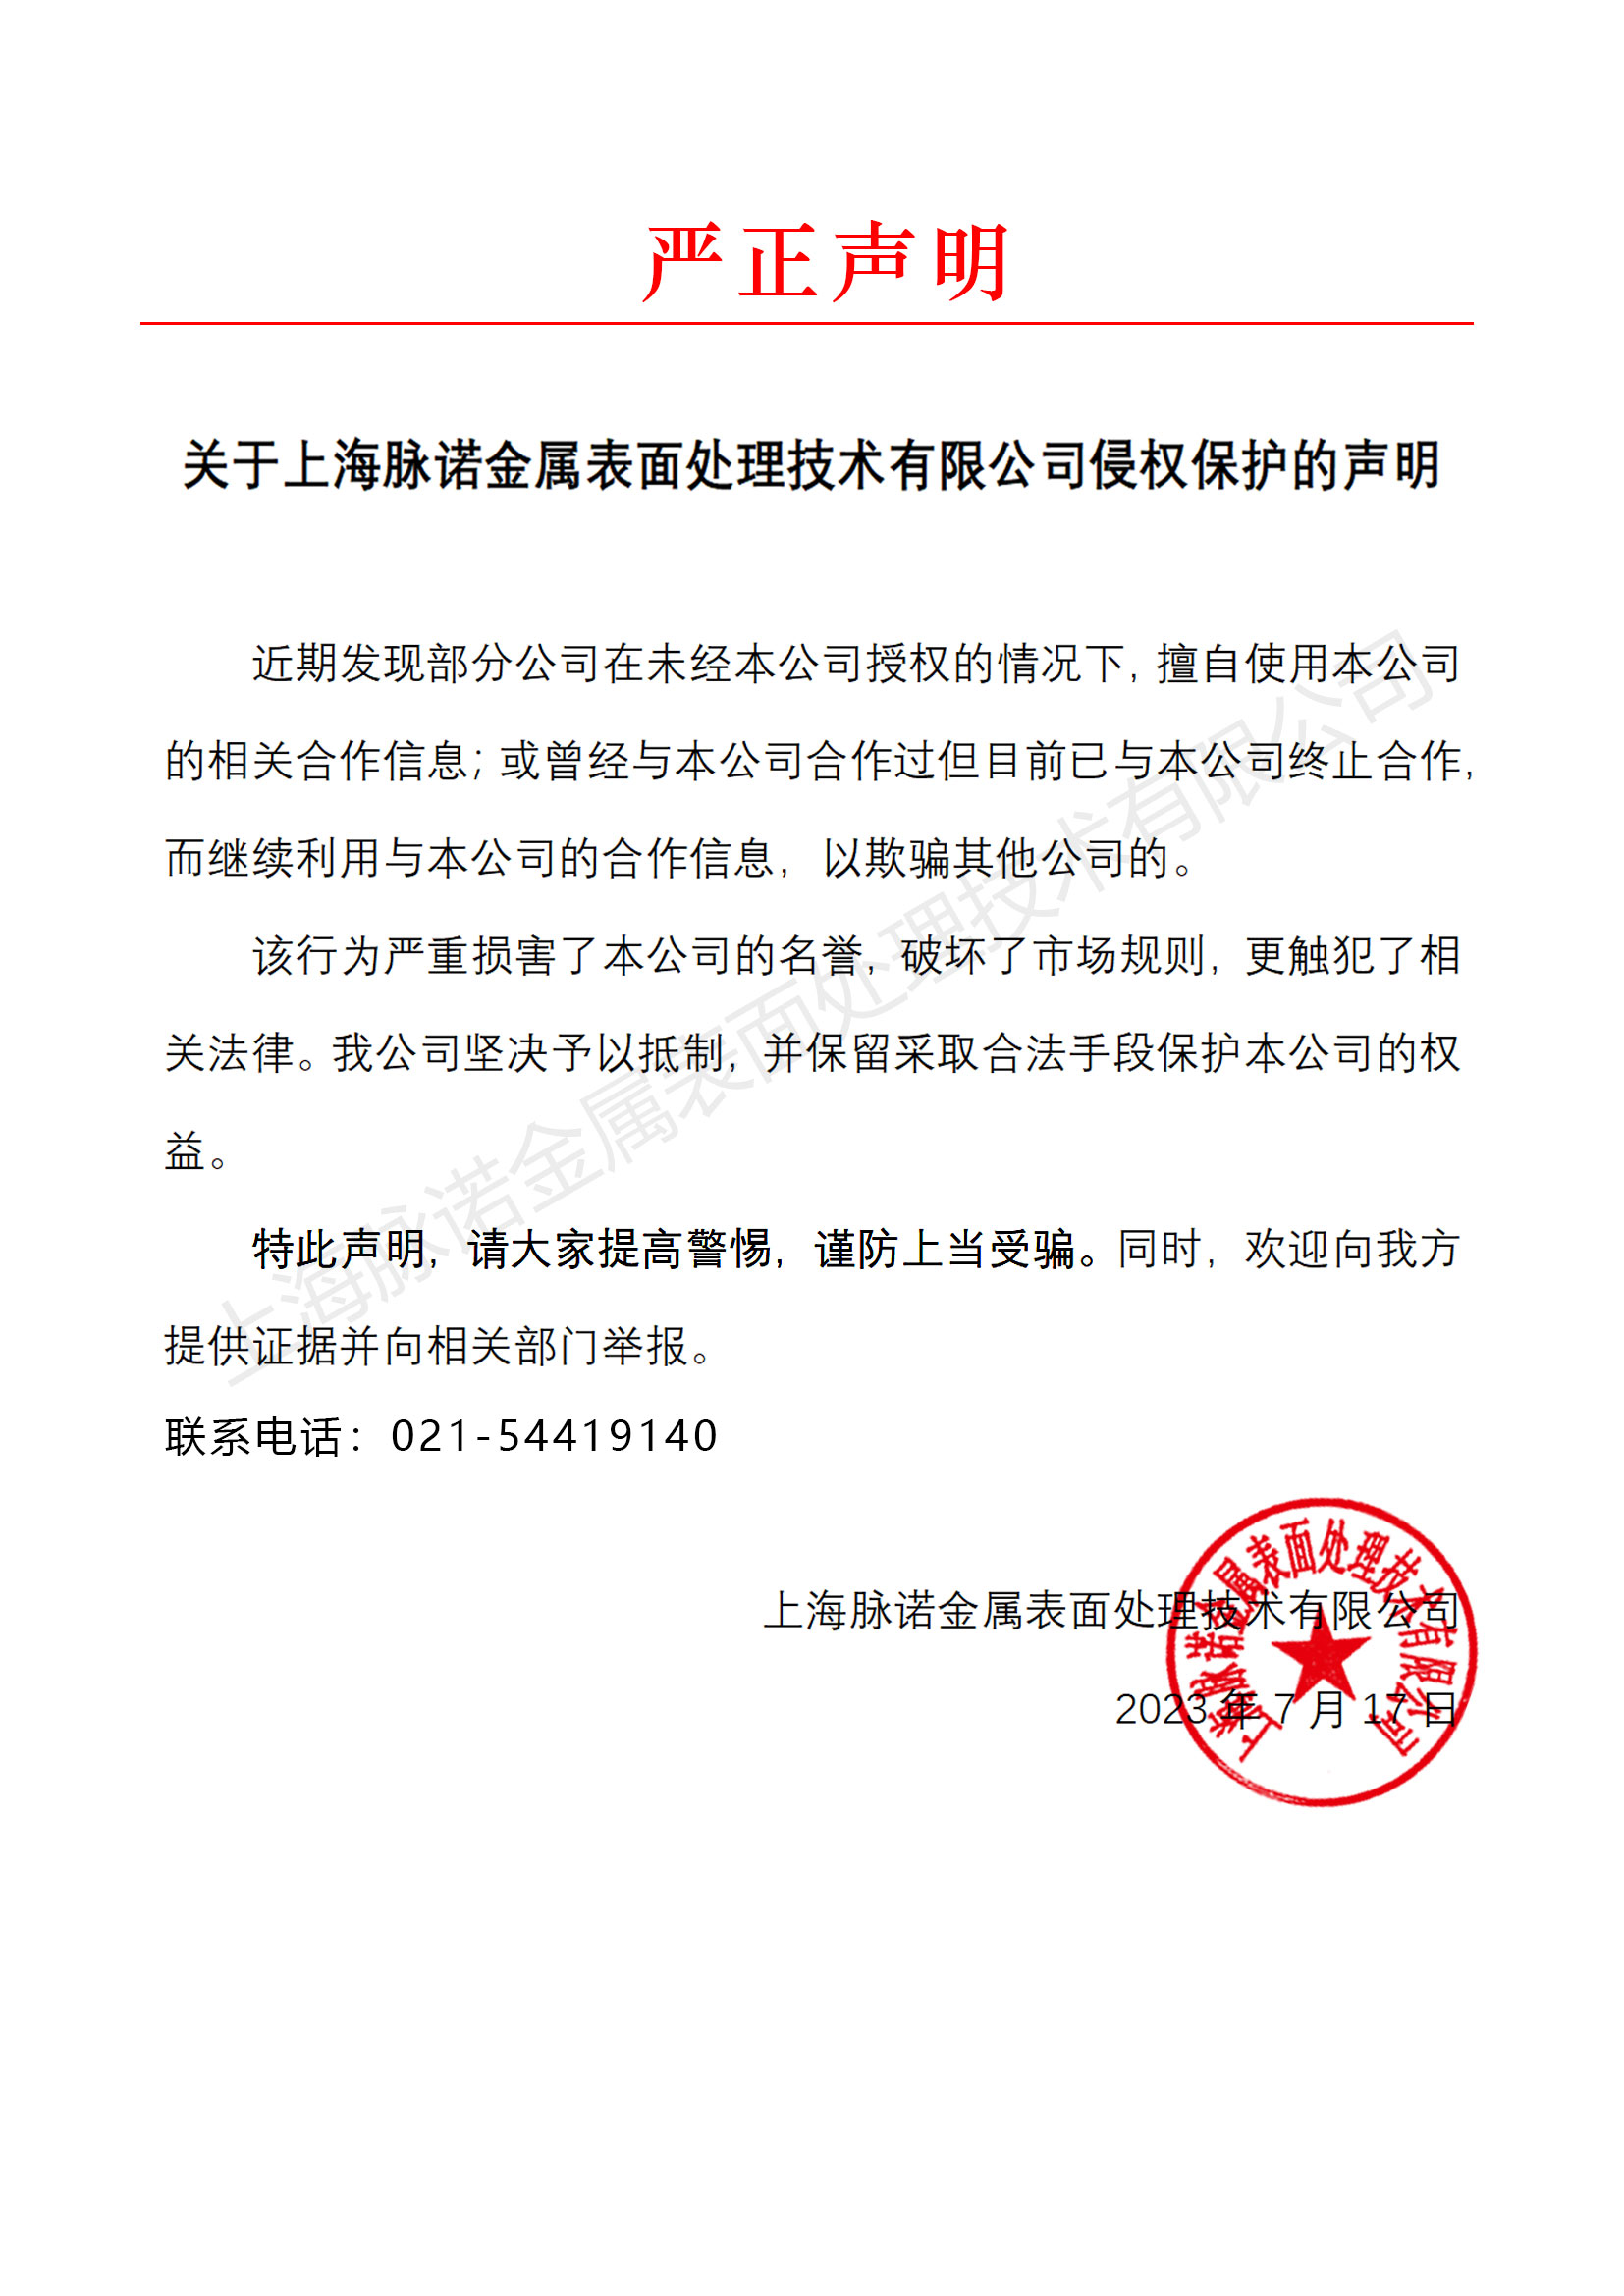 關于上海脈諾金屬表面處理技術有限公司侵權保護的聲明